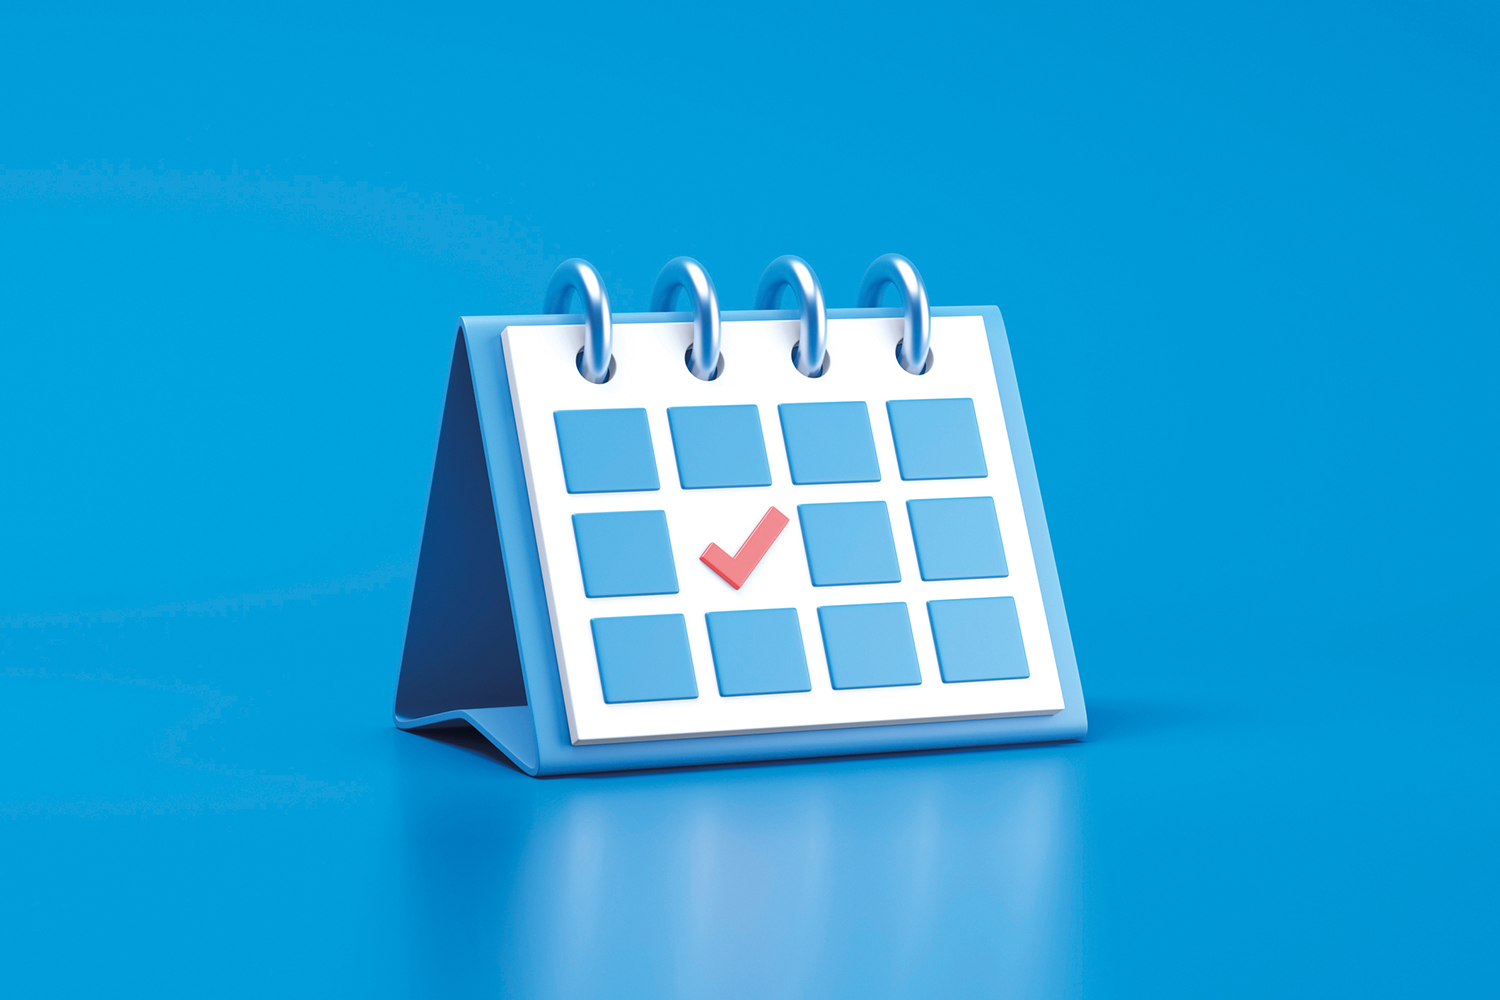 A blue and white desktop calendar